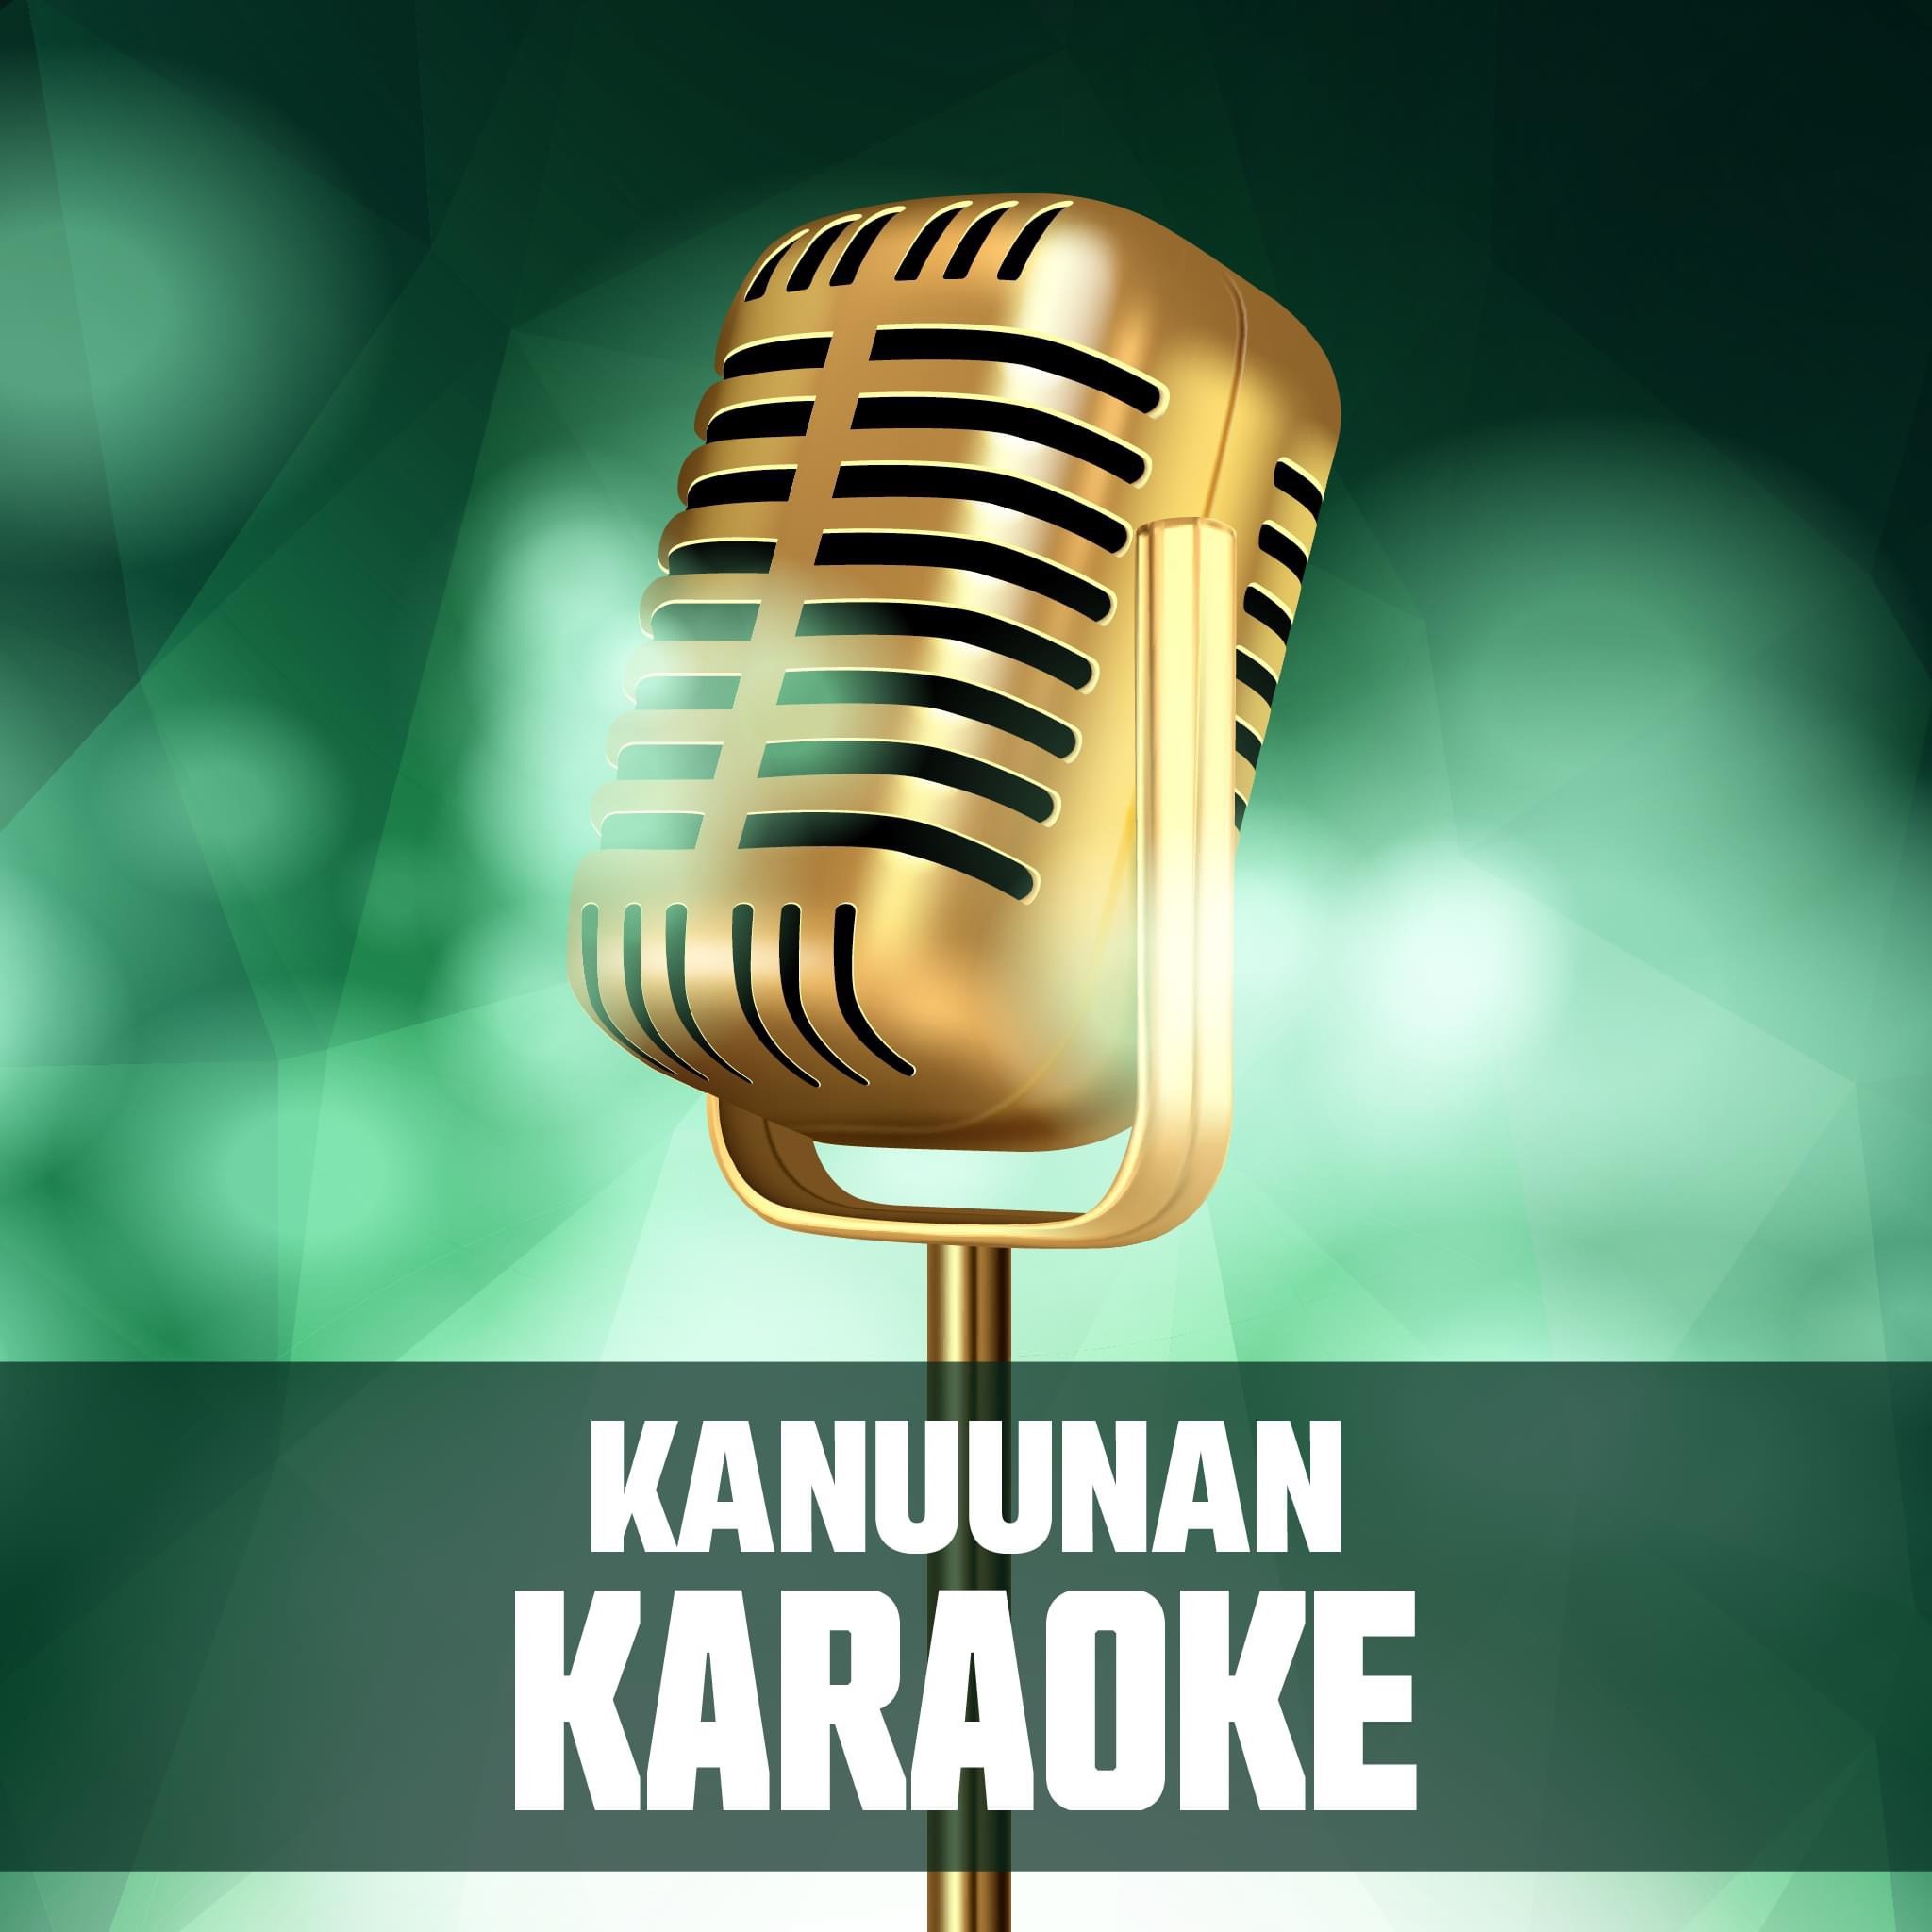 Kanuunan karaoke